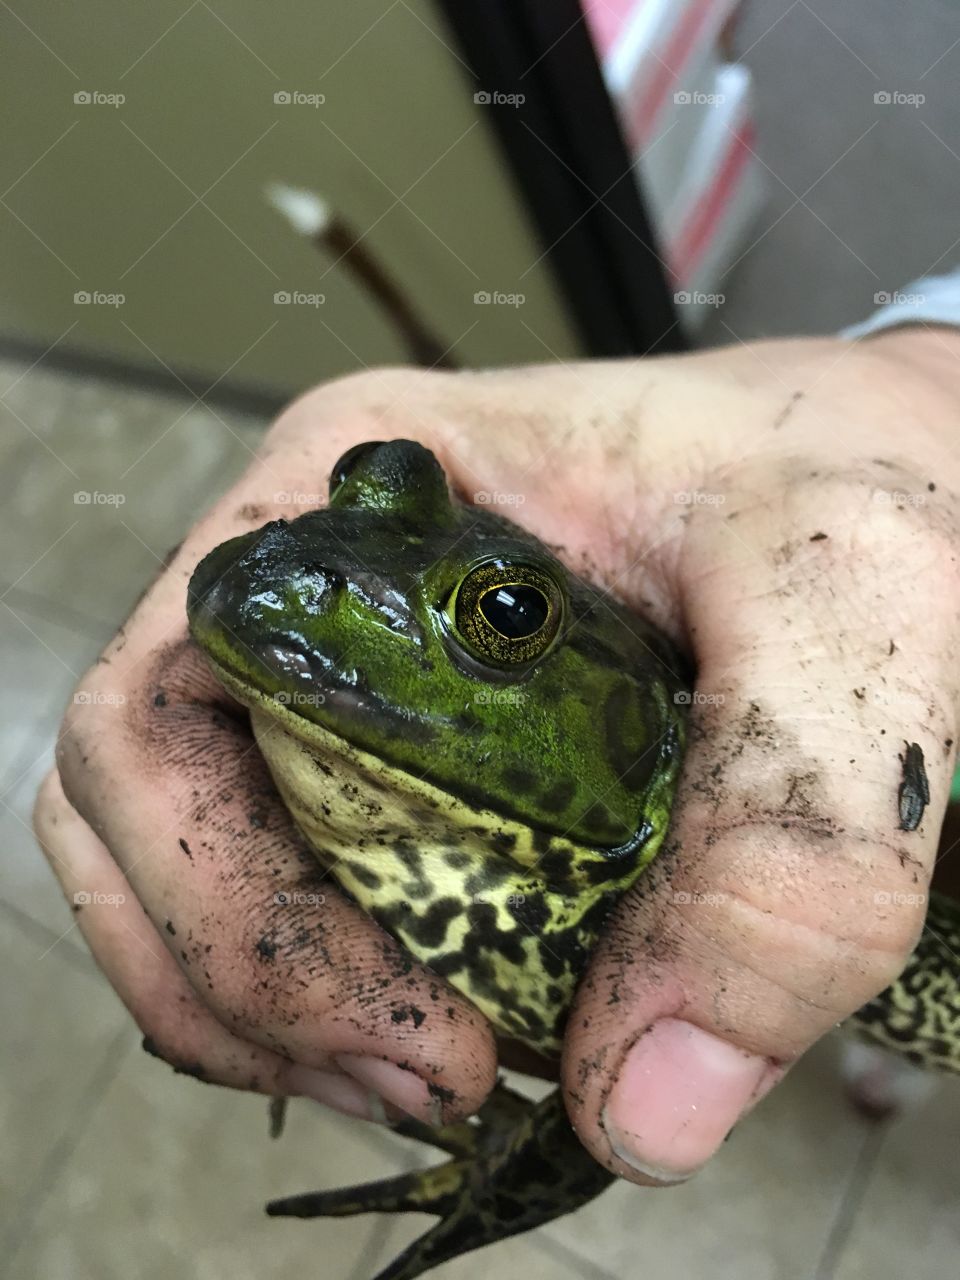 Bullfrog who got caught 